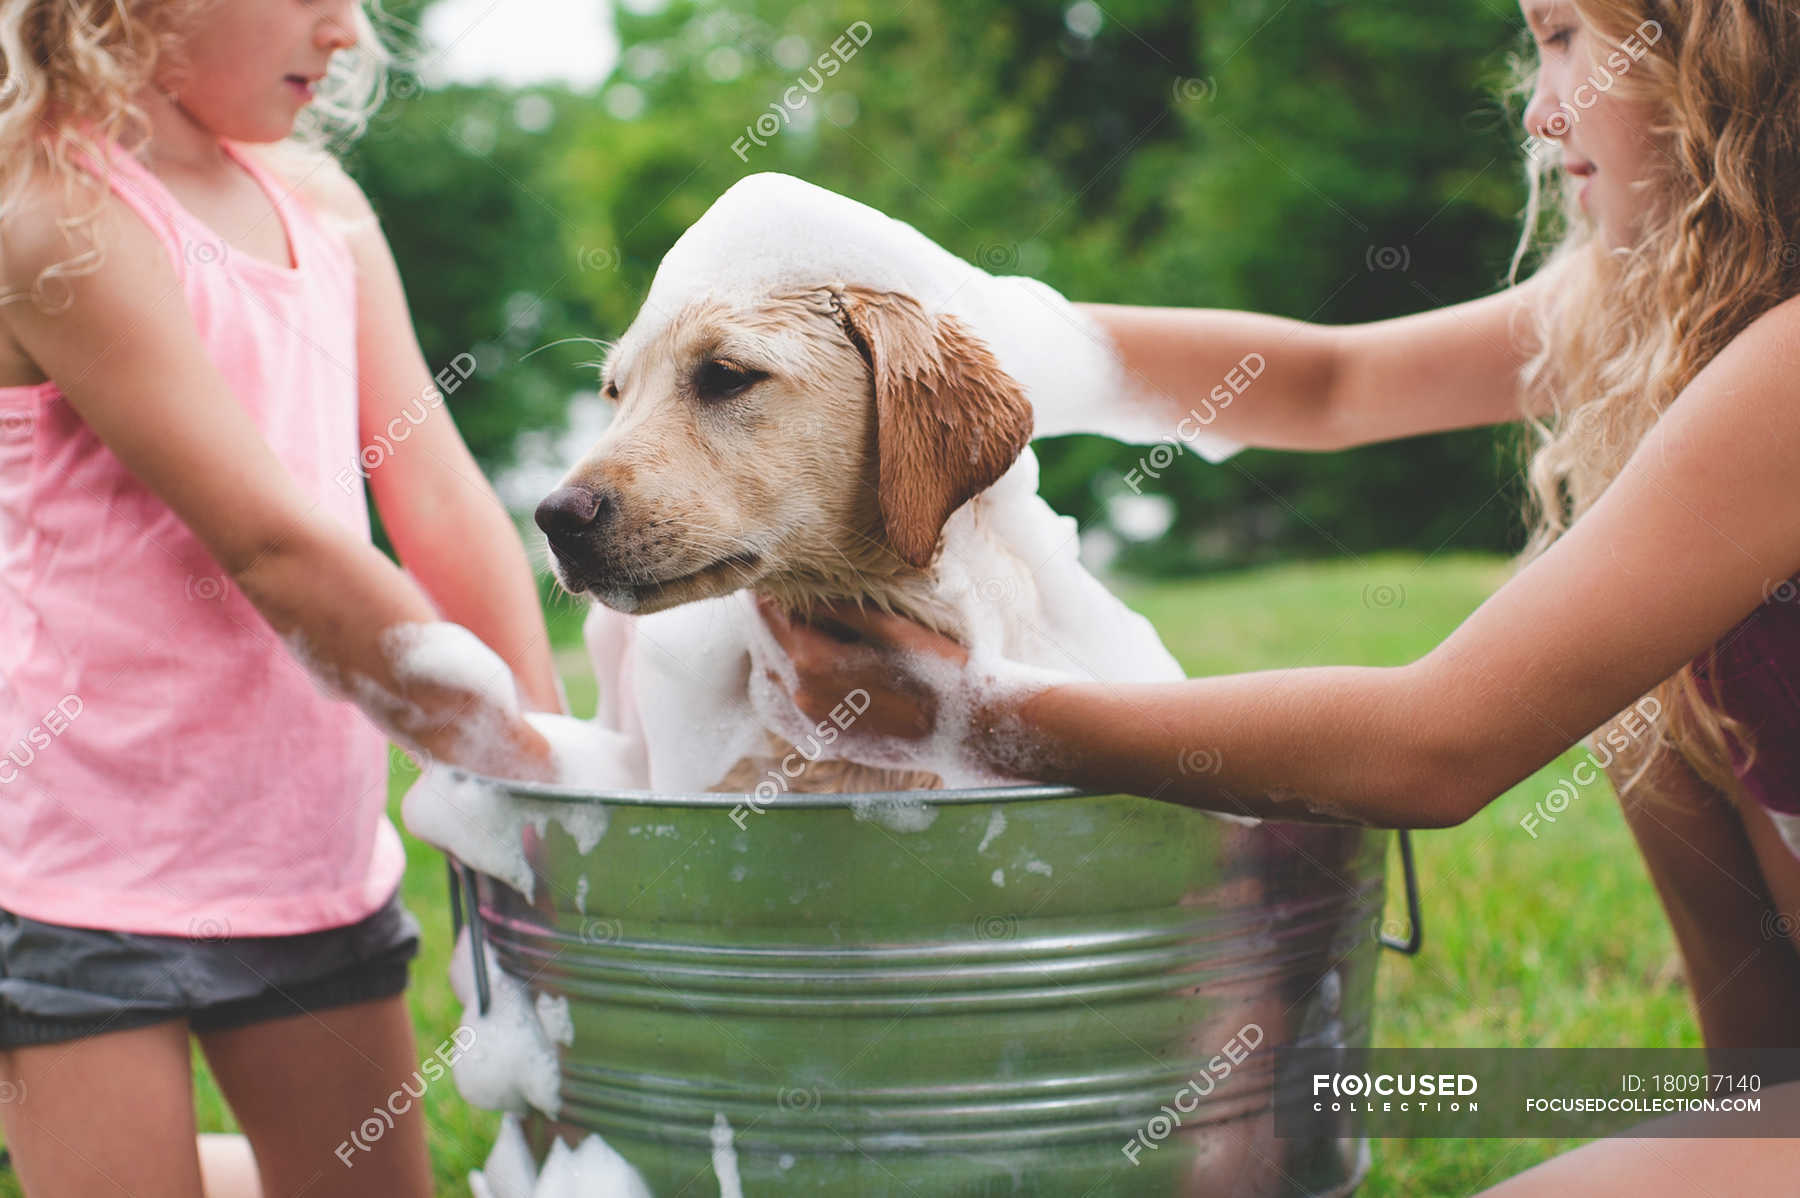 After your pet. Девушка моется с собакой. Девочка и щенок купаются. Девочка моет собаку. Девушка купает собаку.